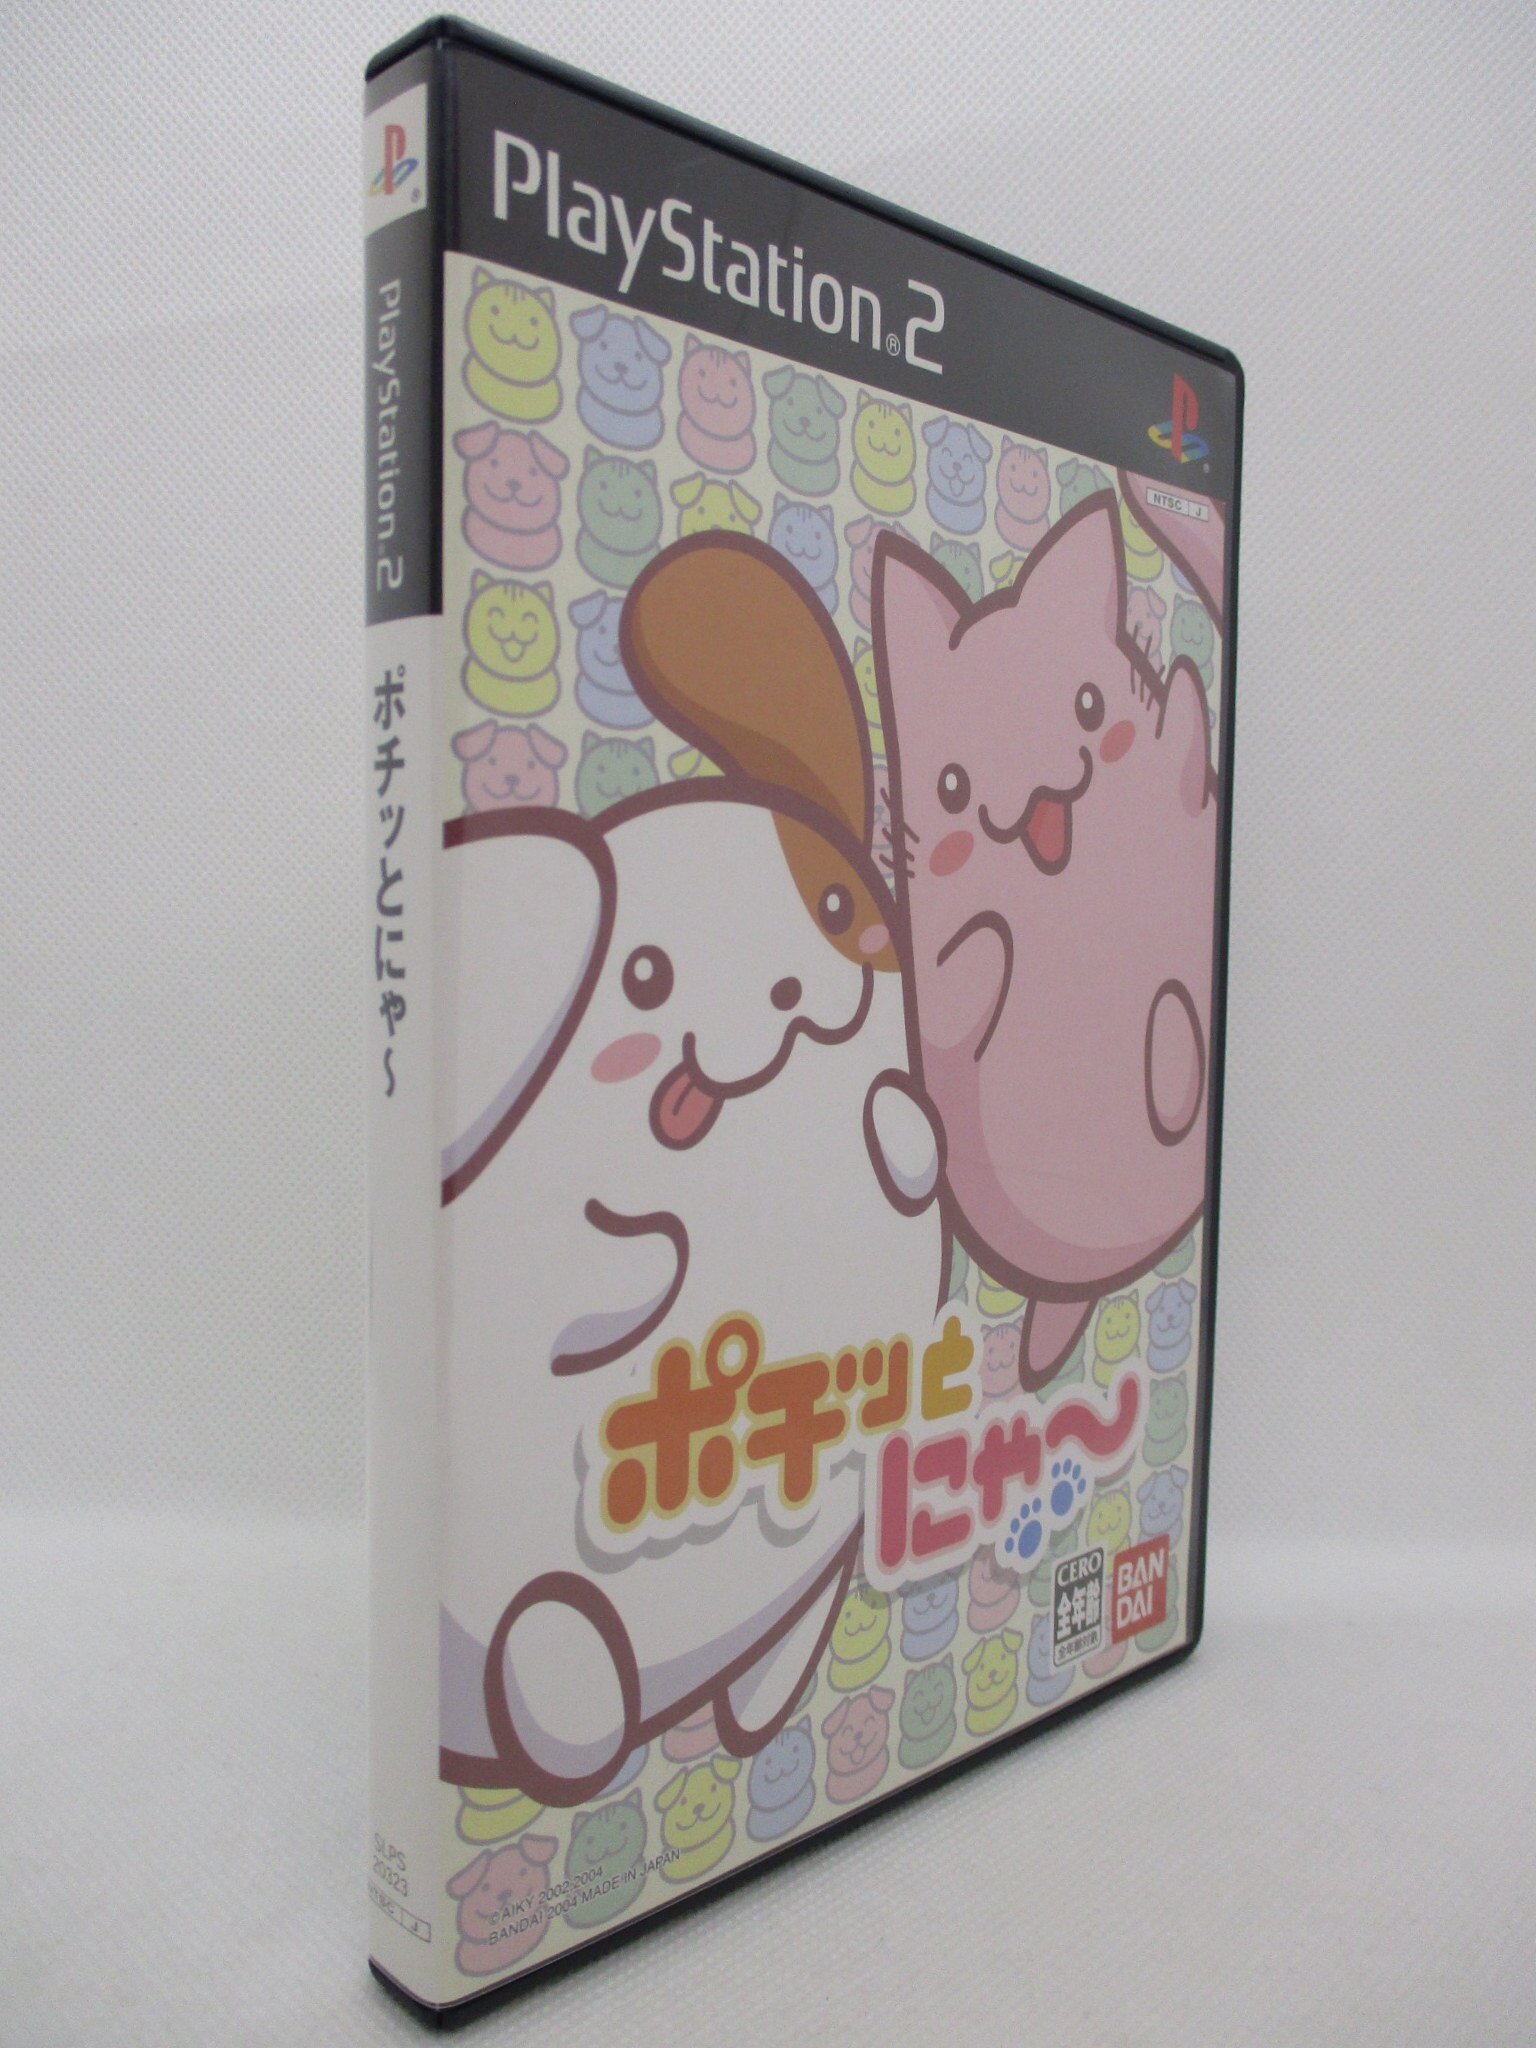 ポチッとにゃ〜 PS2 - テレビゲーム